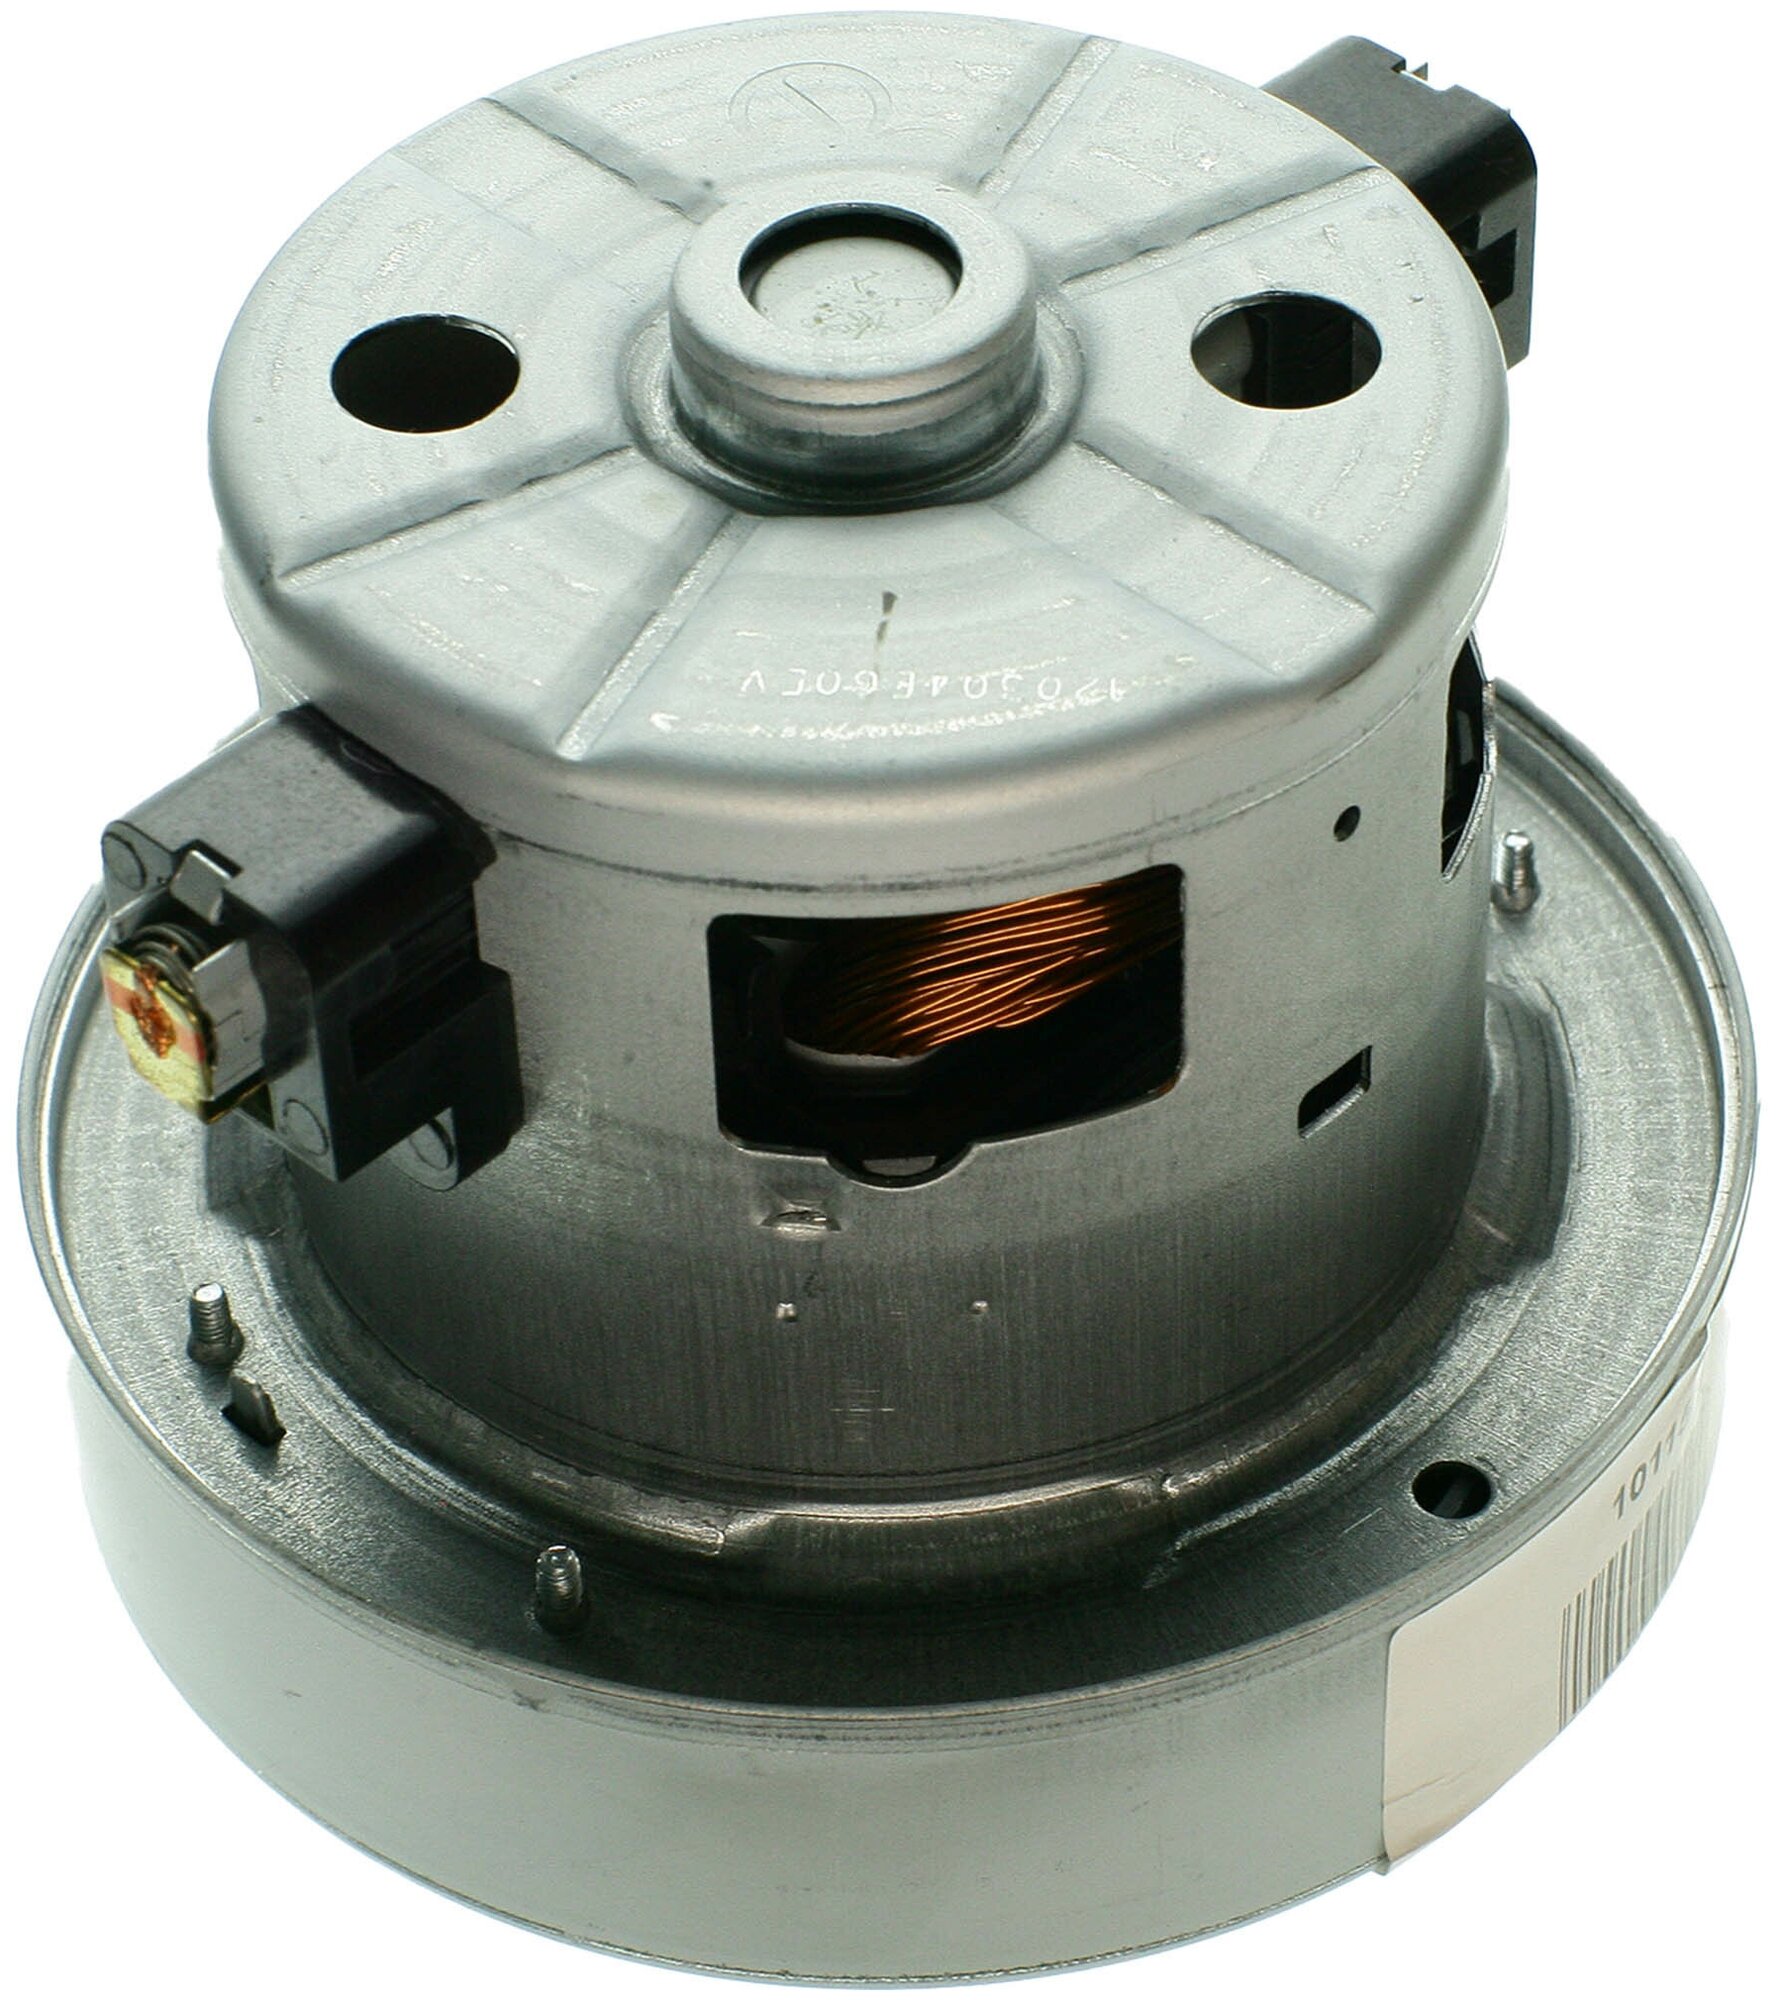 Двигатель для пылесоса Samsung, Bosch, Siemens, Gorenje, 1670 Вт, высотой 110 мм, диаметром 121 мм